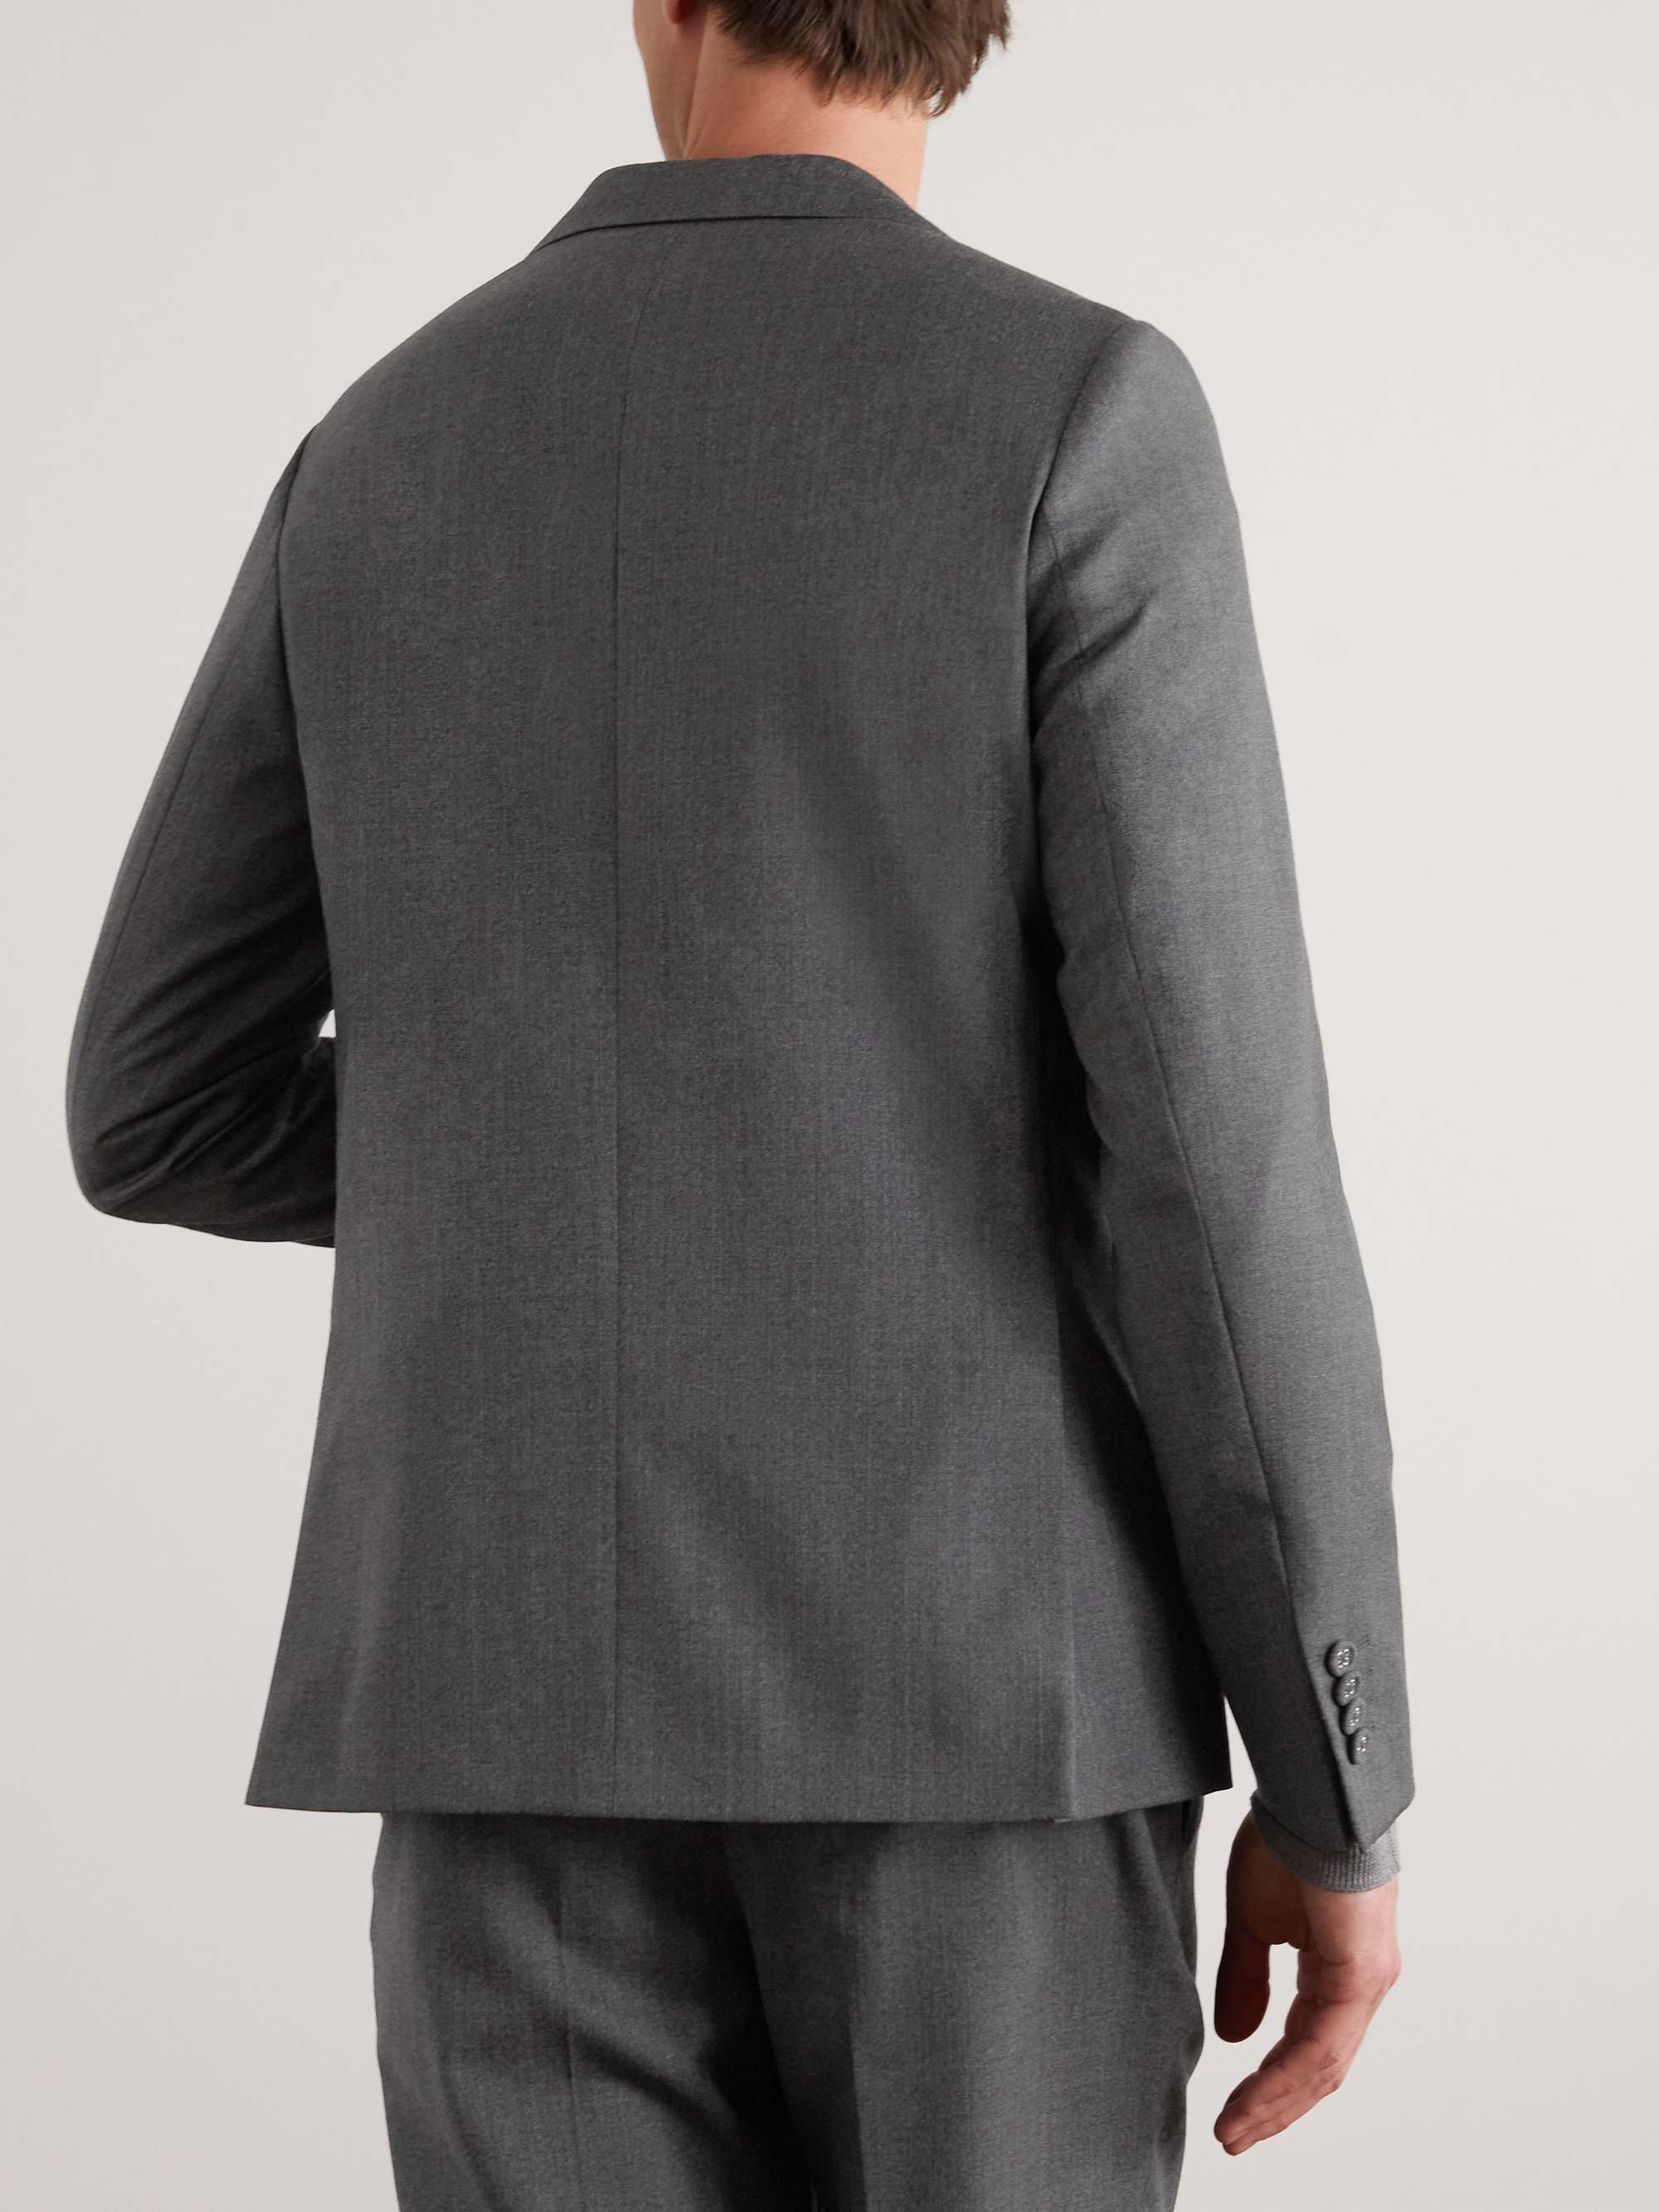 OFFICINE GÉNÉRALE Arthus Wool Suit Jacket for Men | MR PORTER